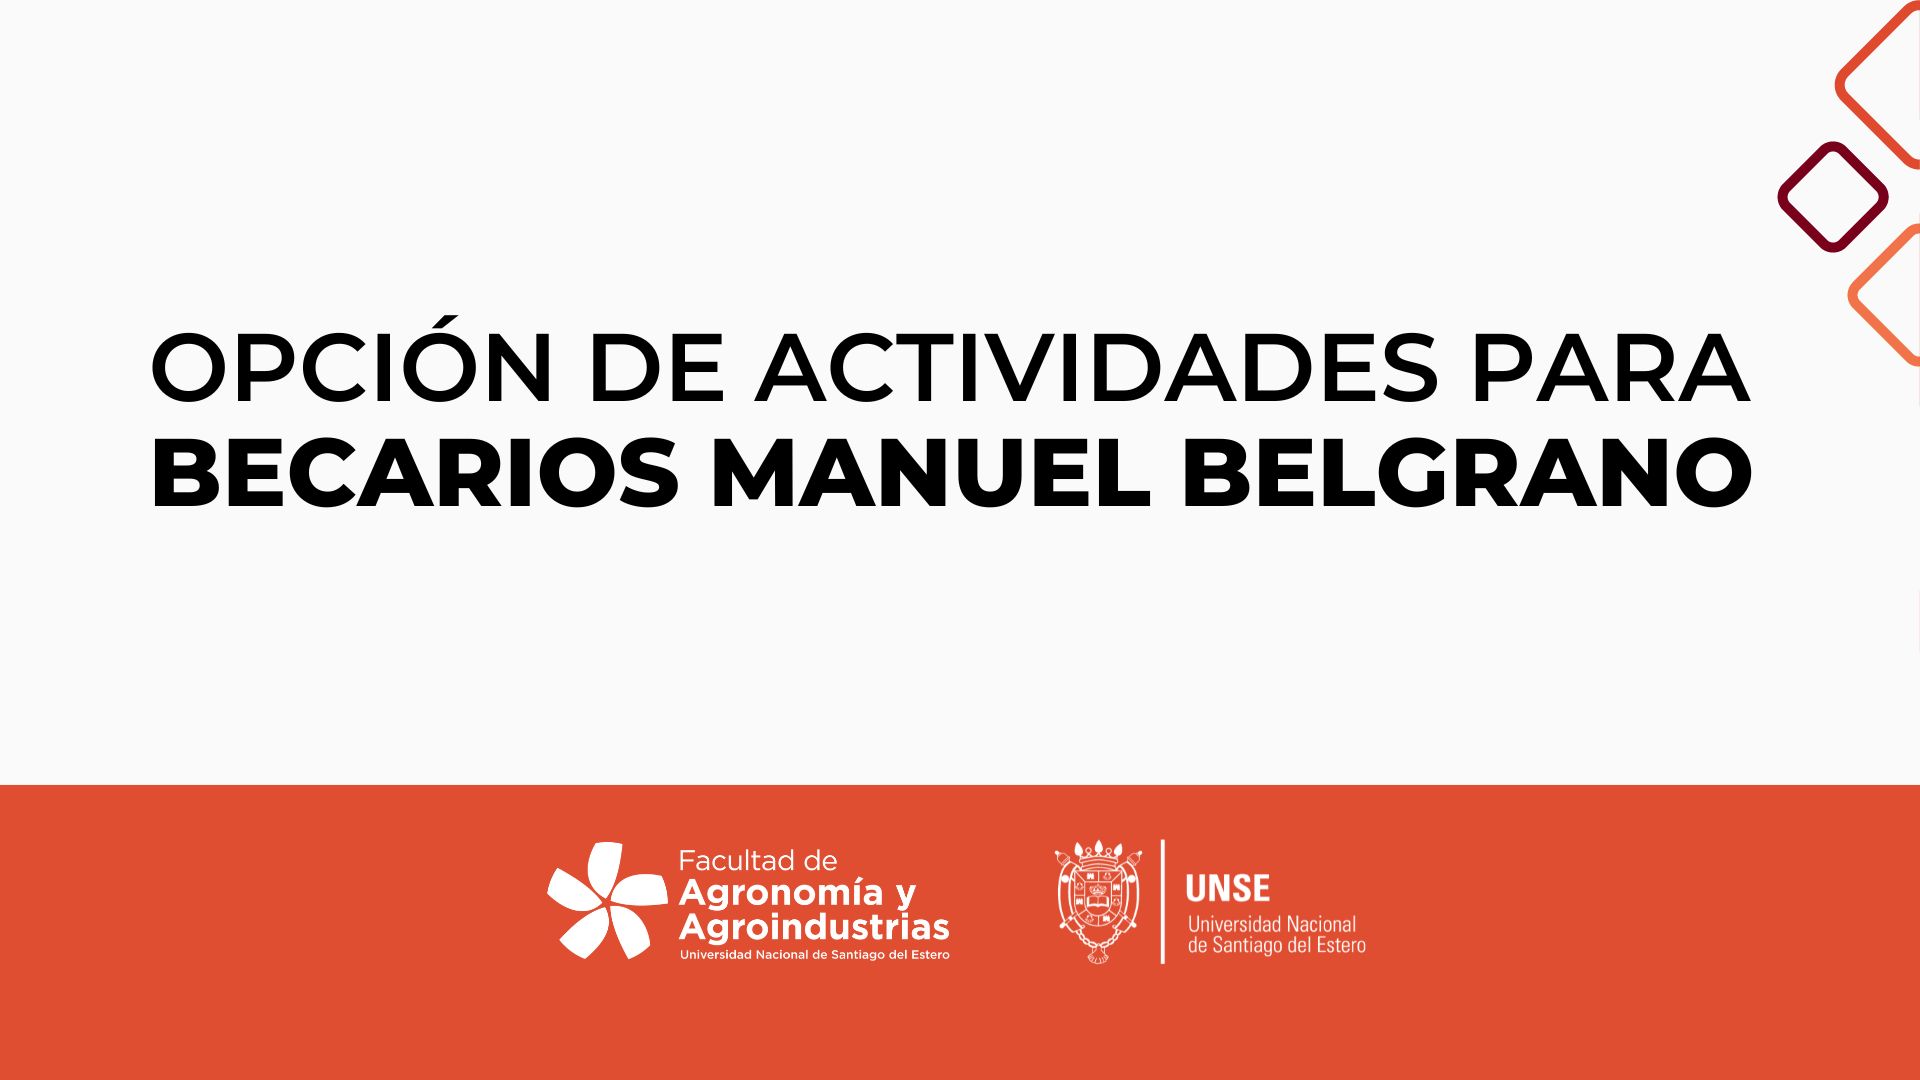 OPCIÓN DE ACTIVIDADES PARA BECARIOS MANUEL BELGRANO